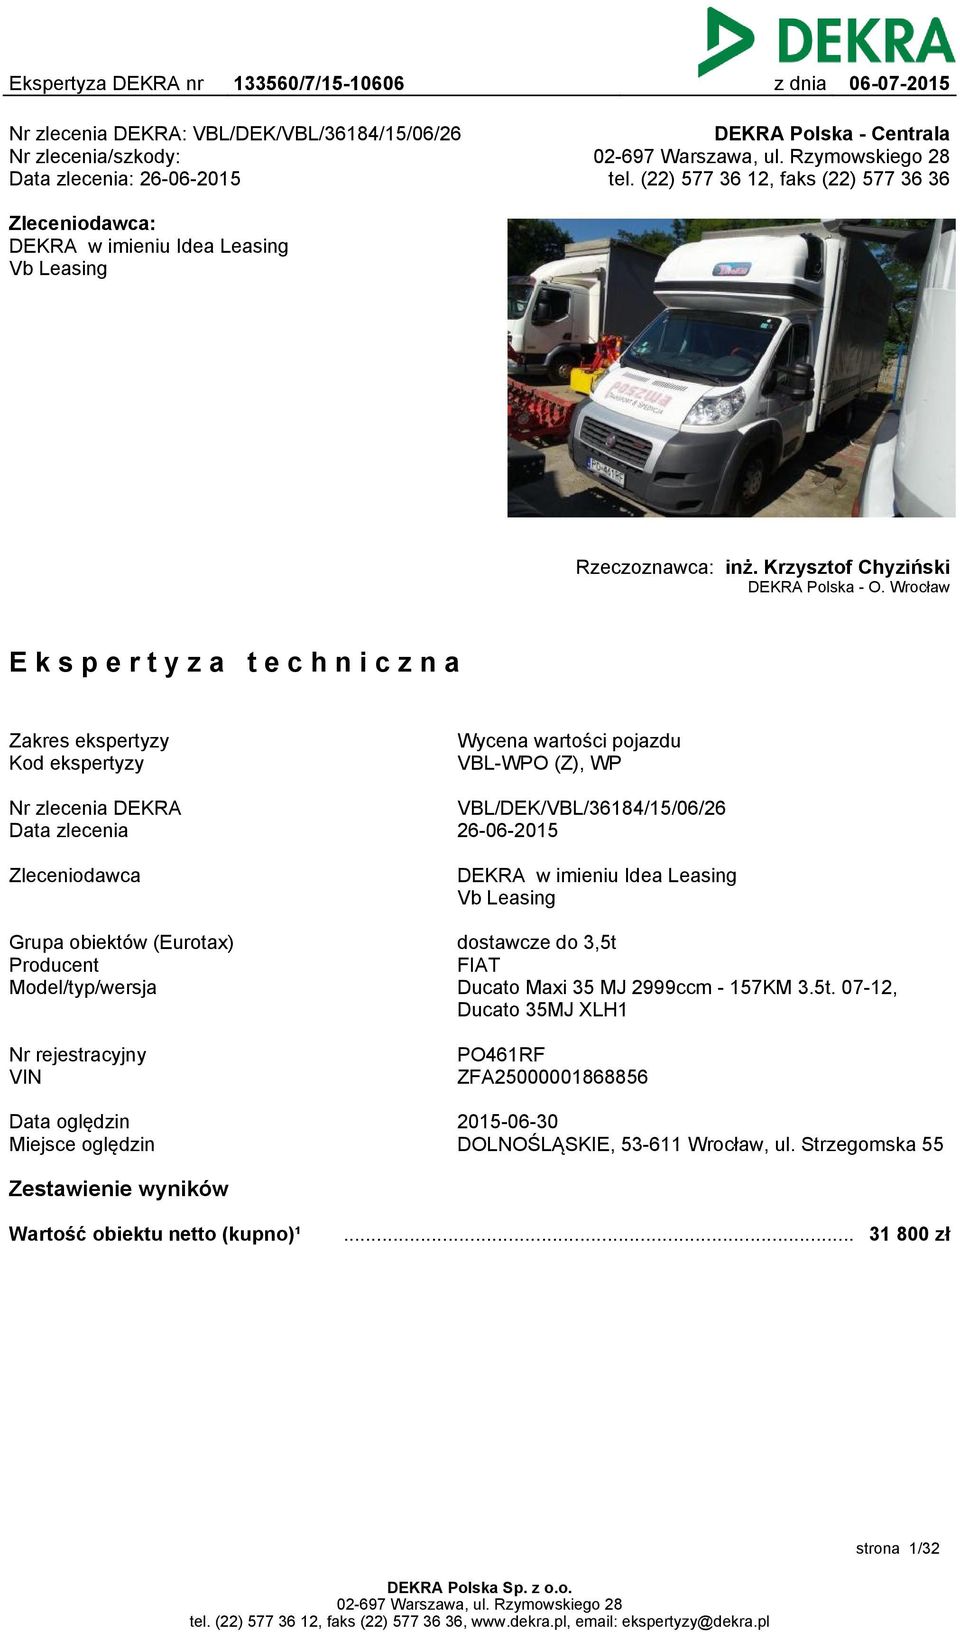 Wrocław Ekspertyza techniczna Zakres ekspertyzy Kod ekspertyzy Wycena wartości pojazdu VBL-WPO (Z), WP Nr zlecenia DEKRA Data zlecenia VBL/DEK/VBL/36184/15/06/26 26-06-2015 Zleceniodawca DEKRA w